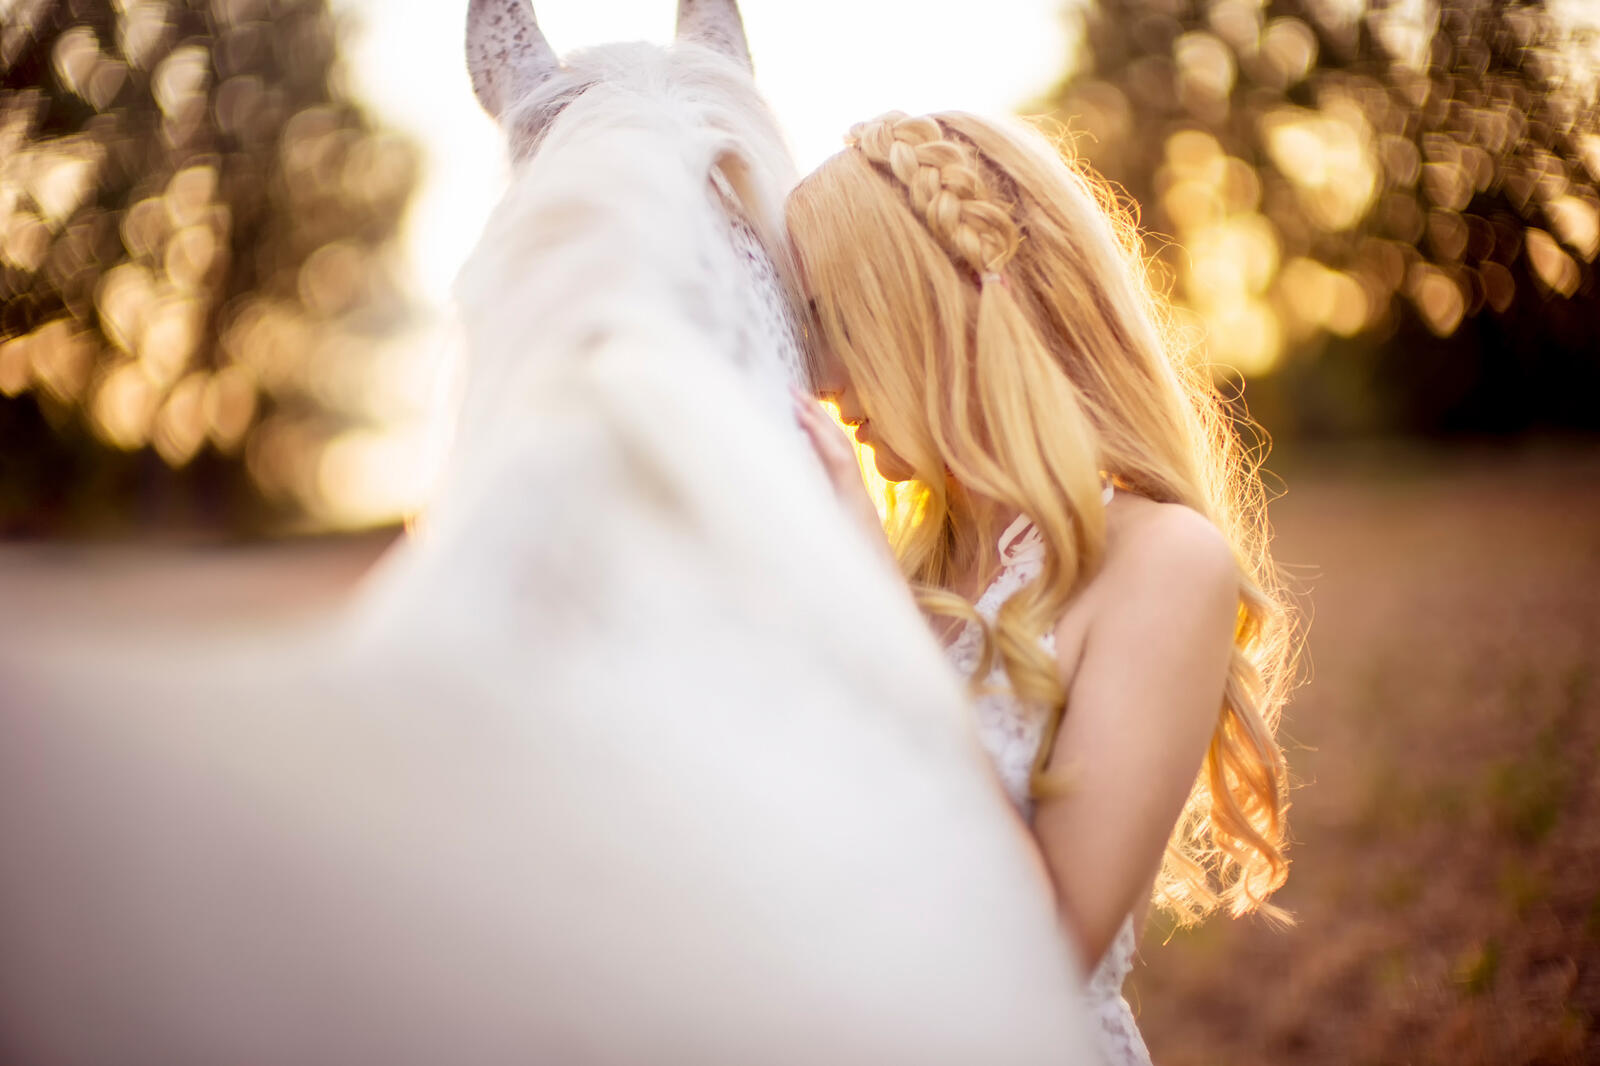 Бесплатное фото Девушка и белая лошадь